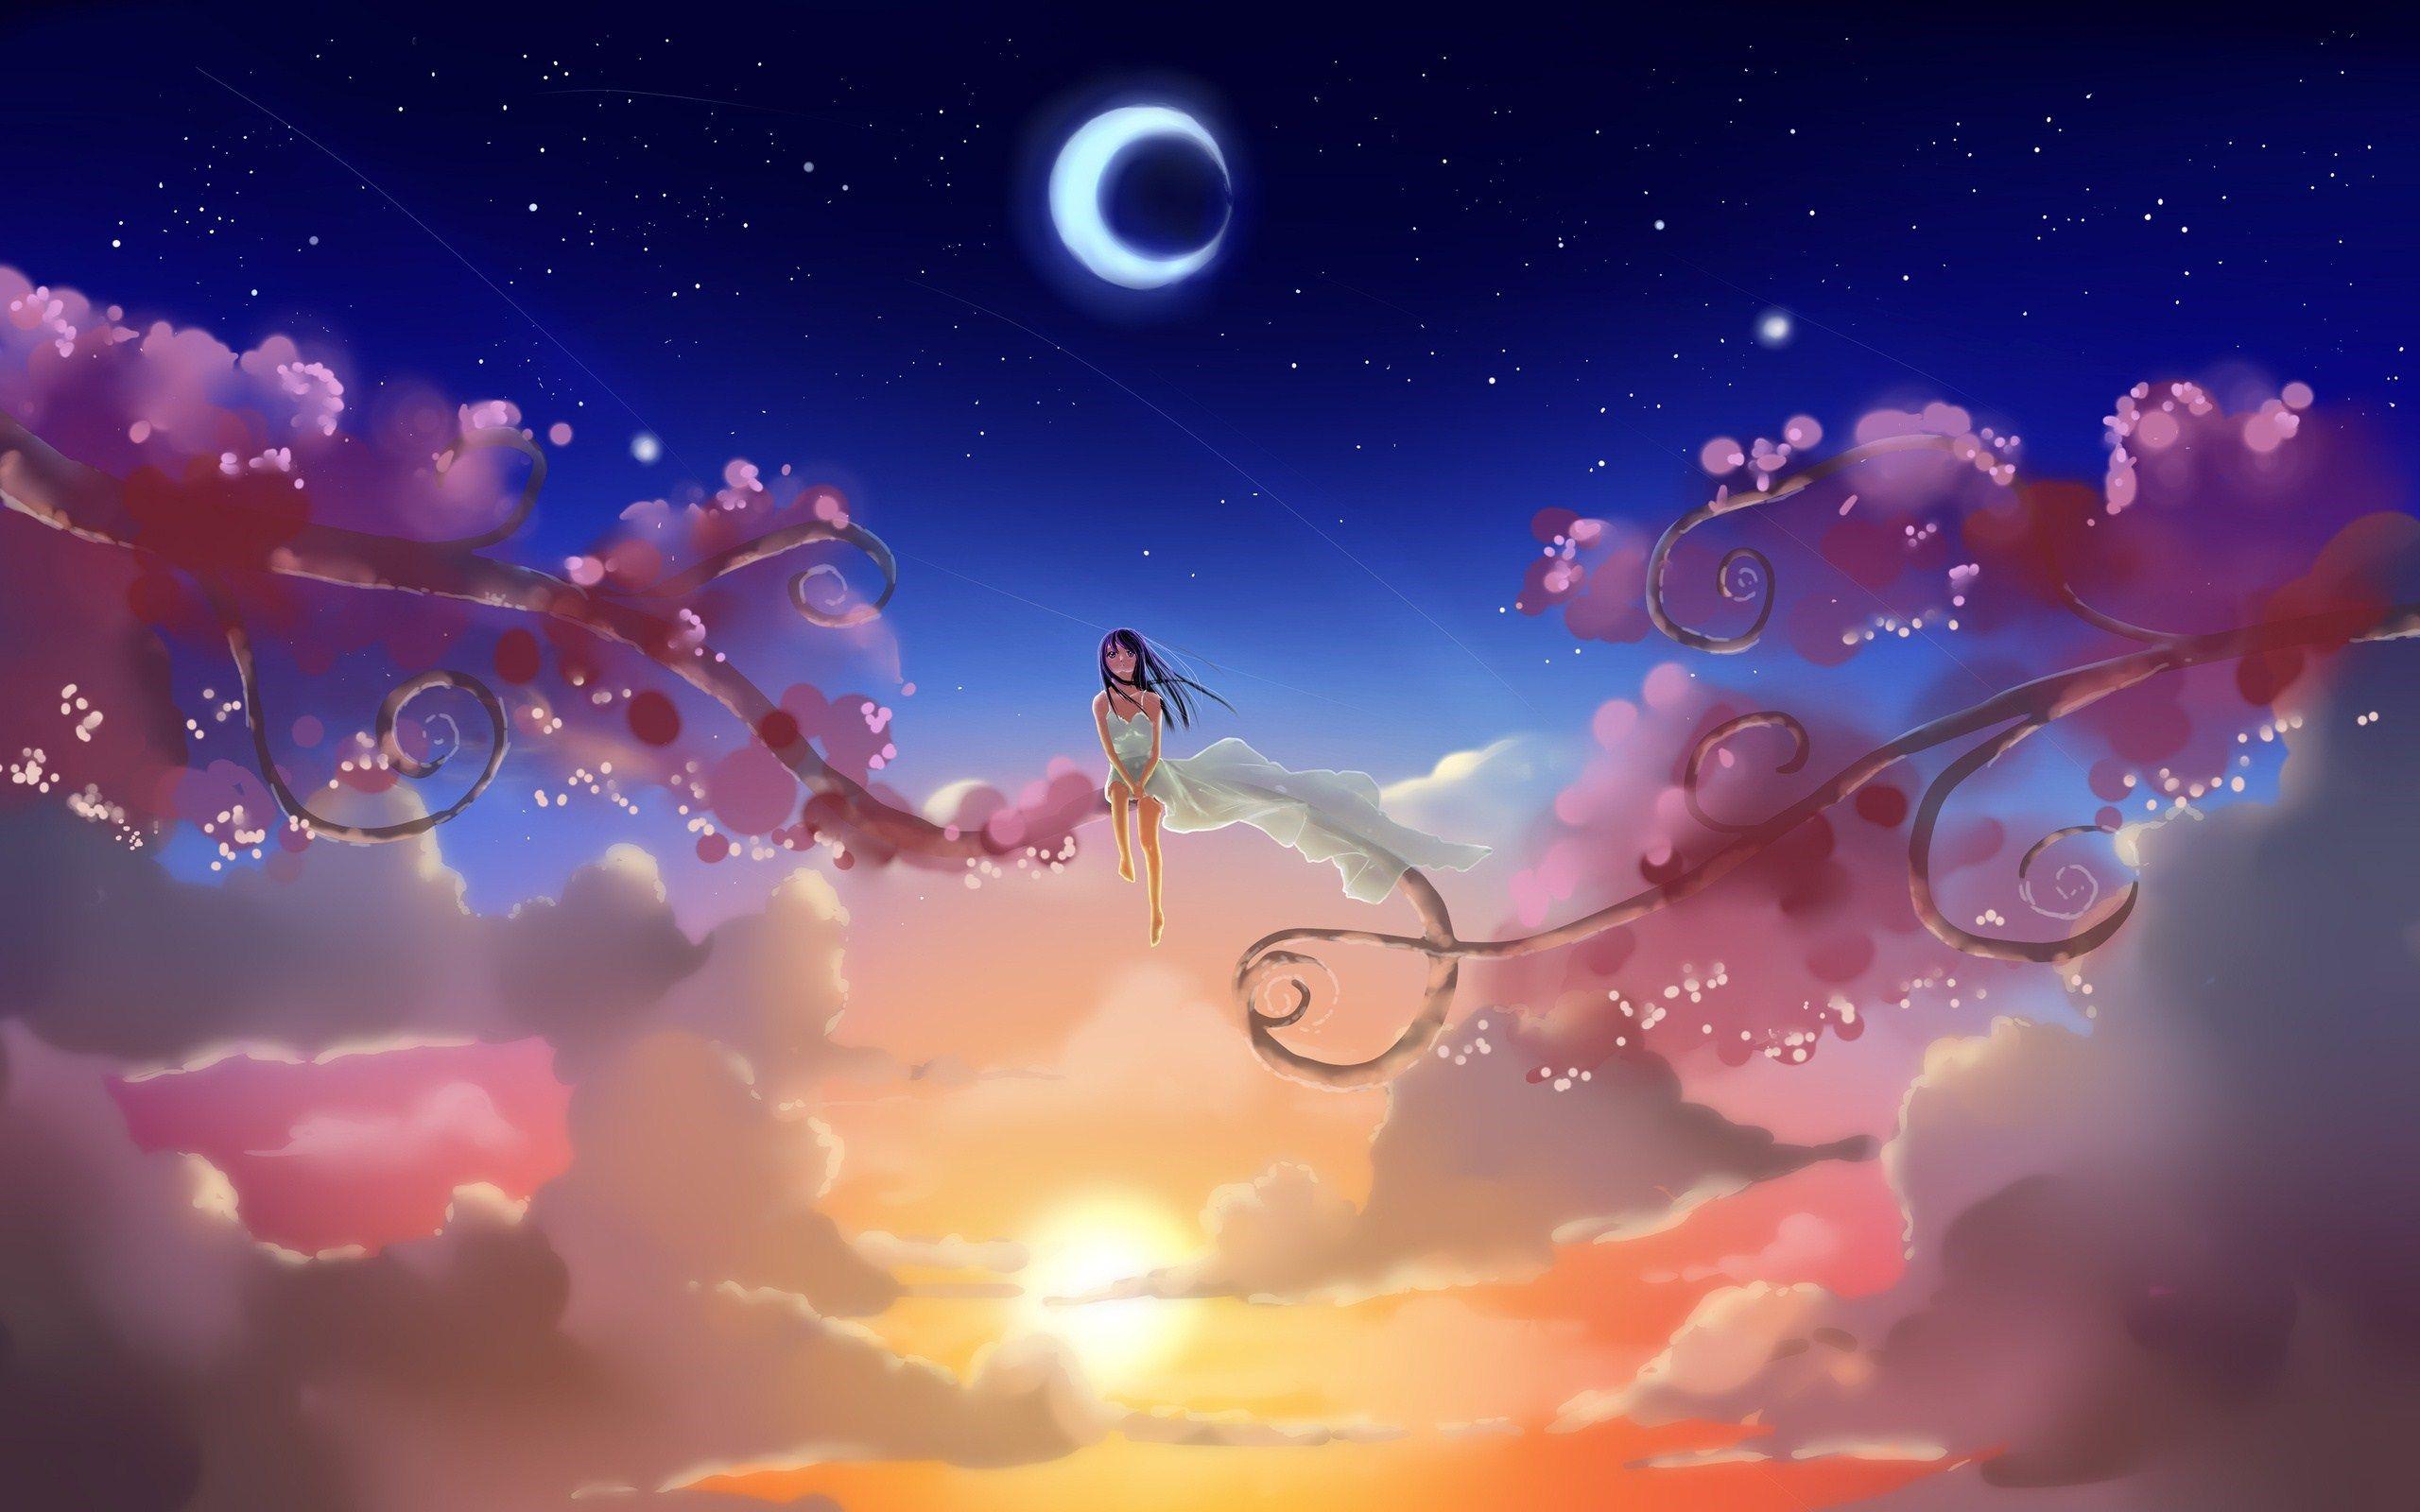 Anime Girl Dream World Artwork Hd Wallpaper Background Uhd 2k 4k